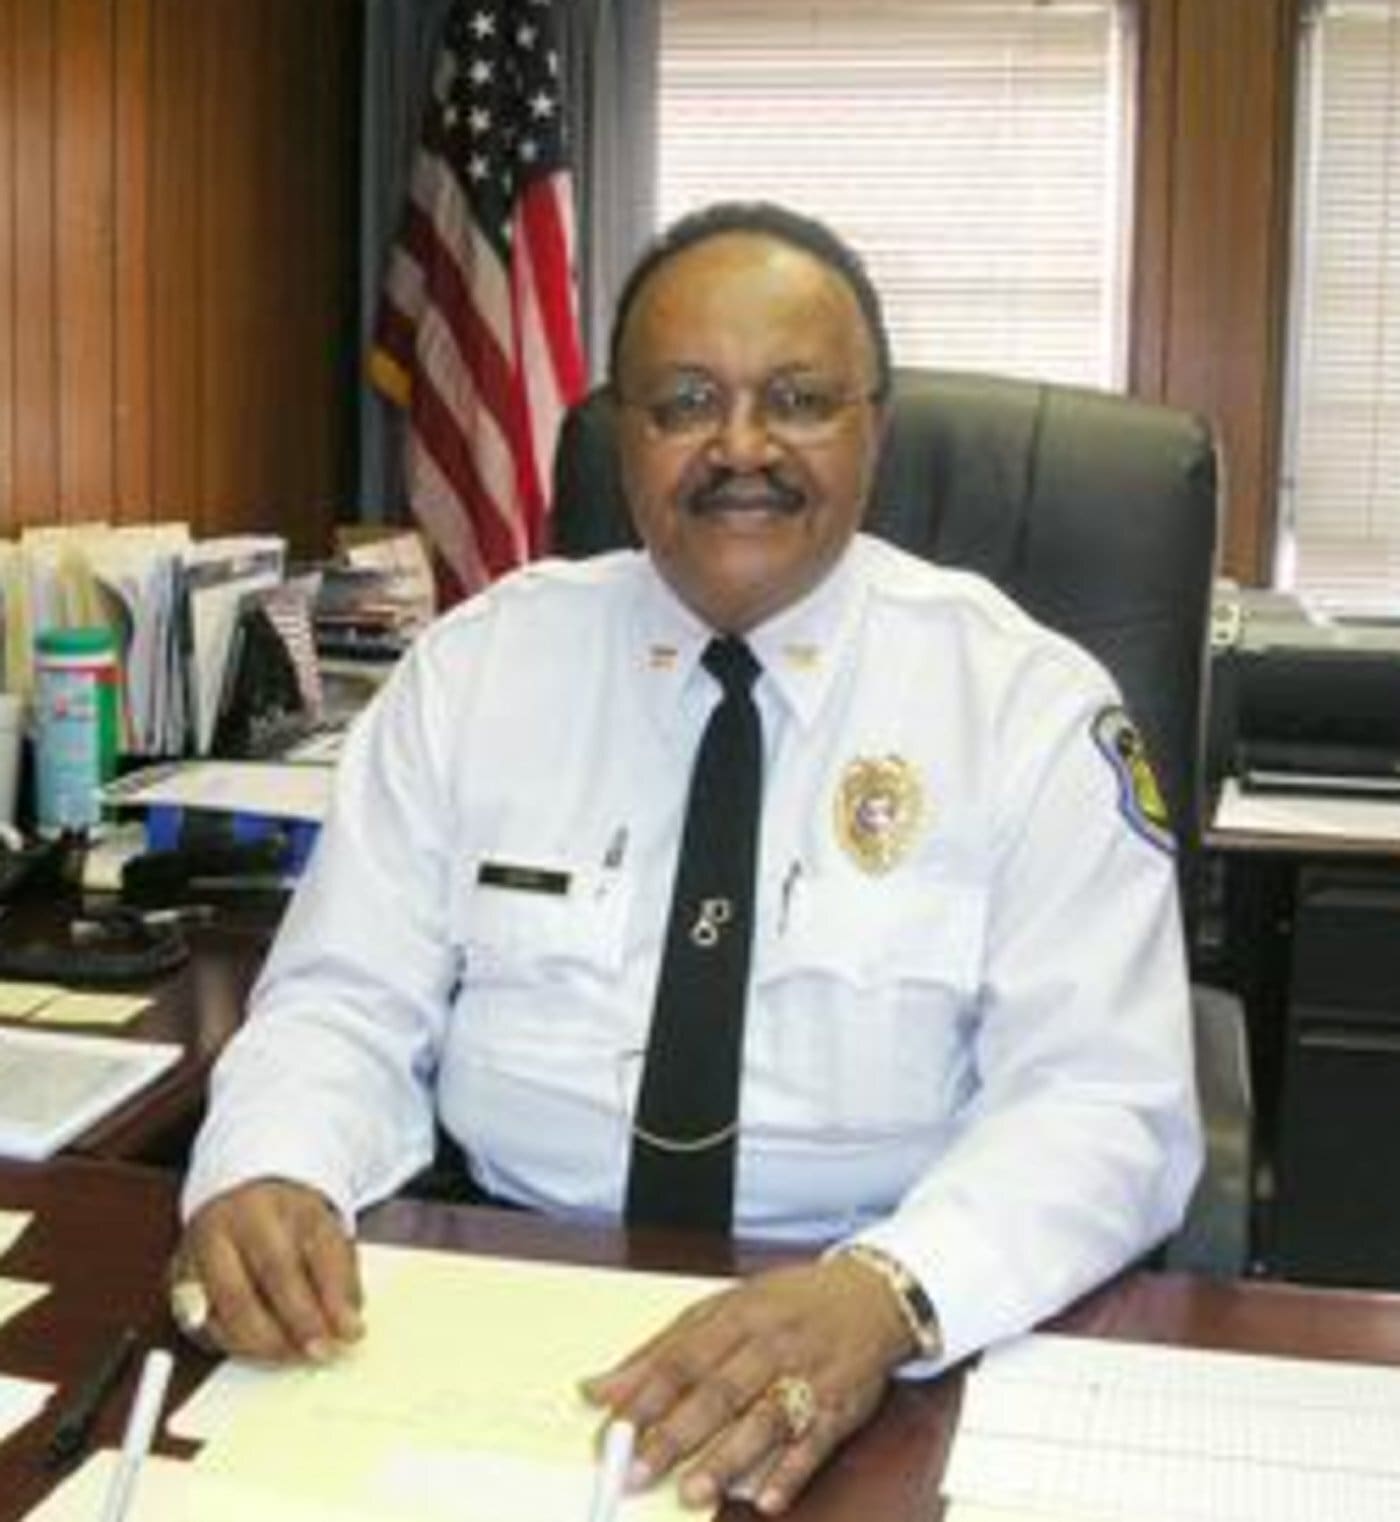 St. Louis Police Capt. David Dorn